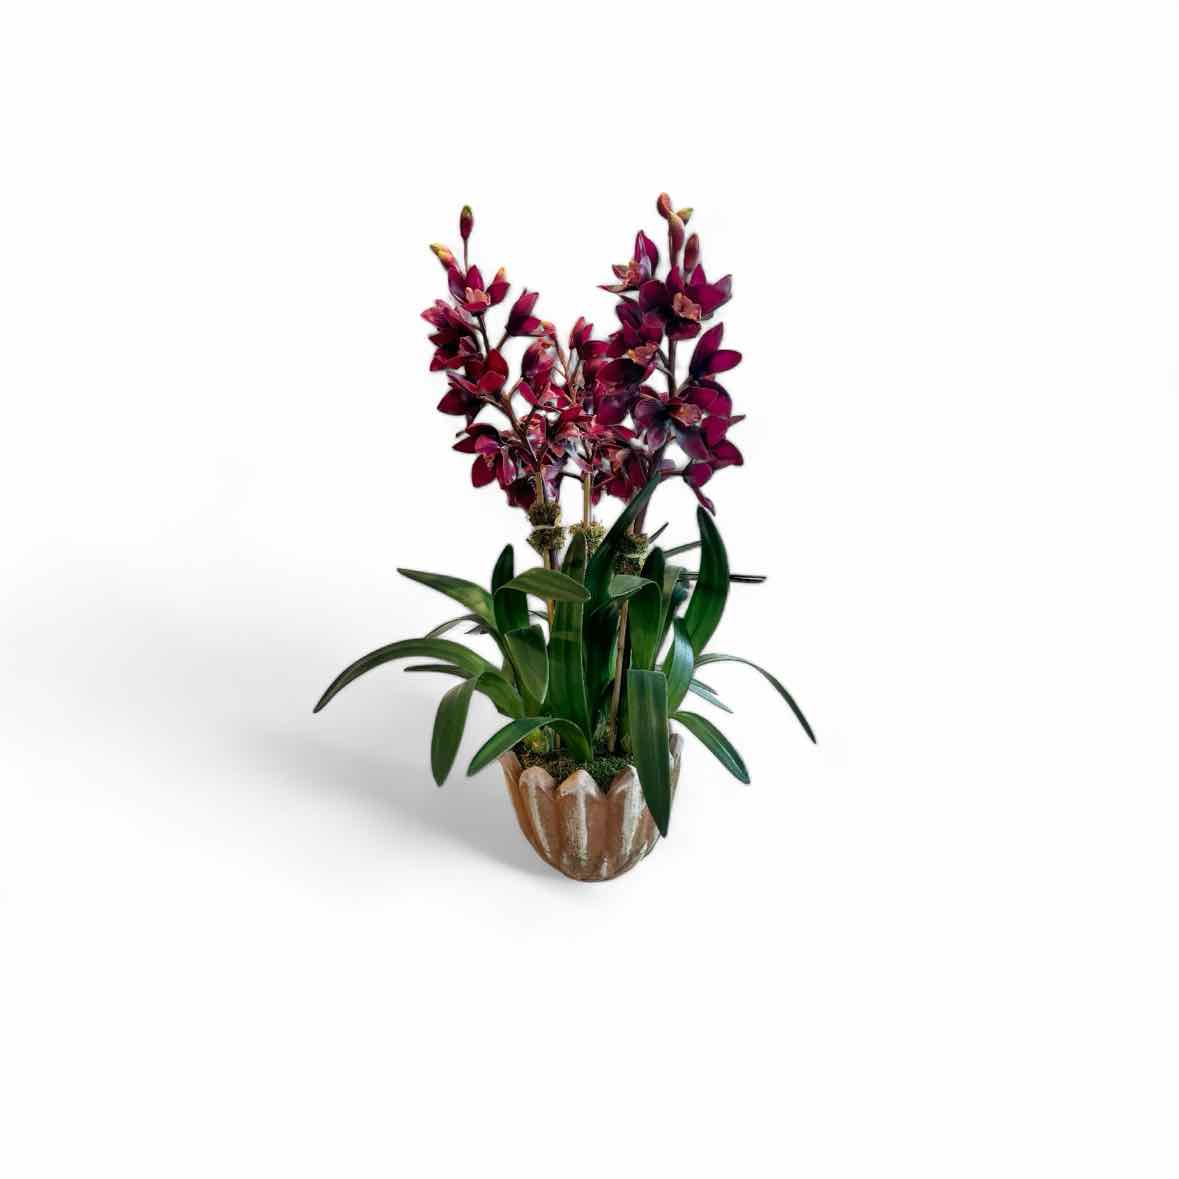 F23-CO3.MP-BU - Burgundy cymbidium orchid, 3 stems, in mossy flower pot